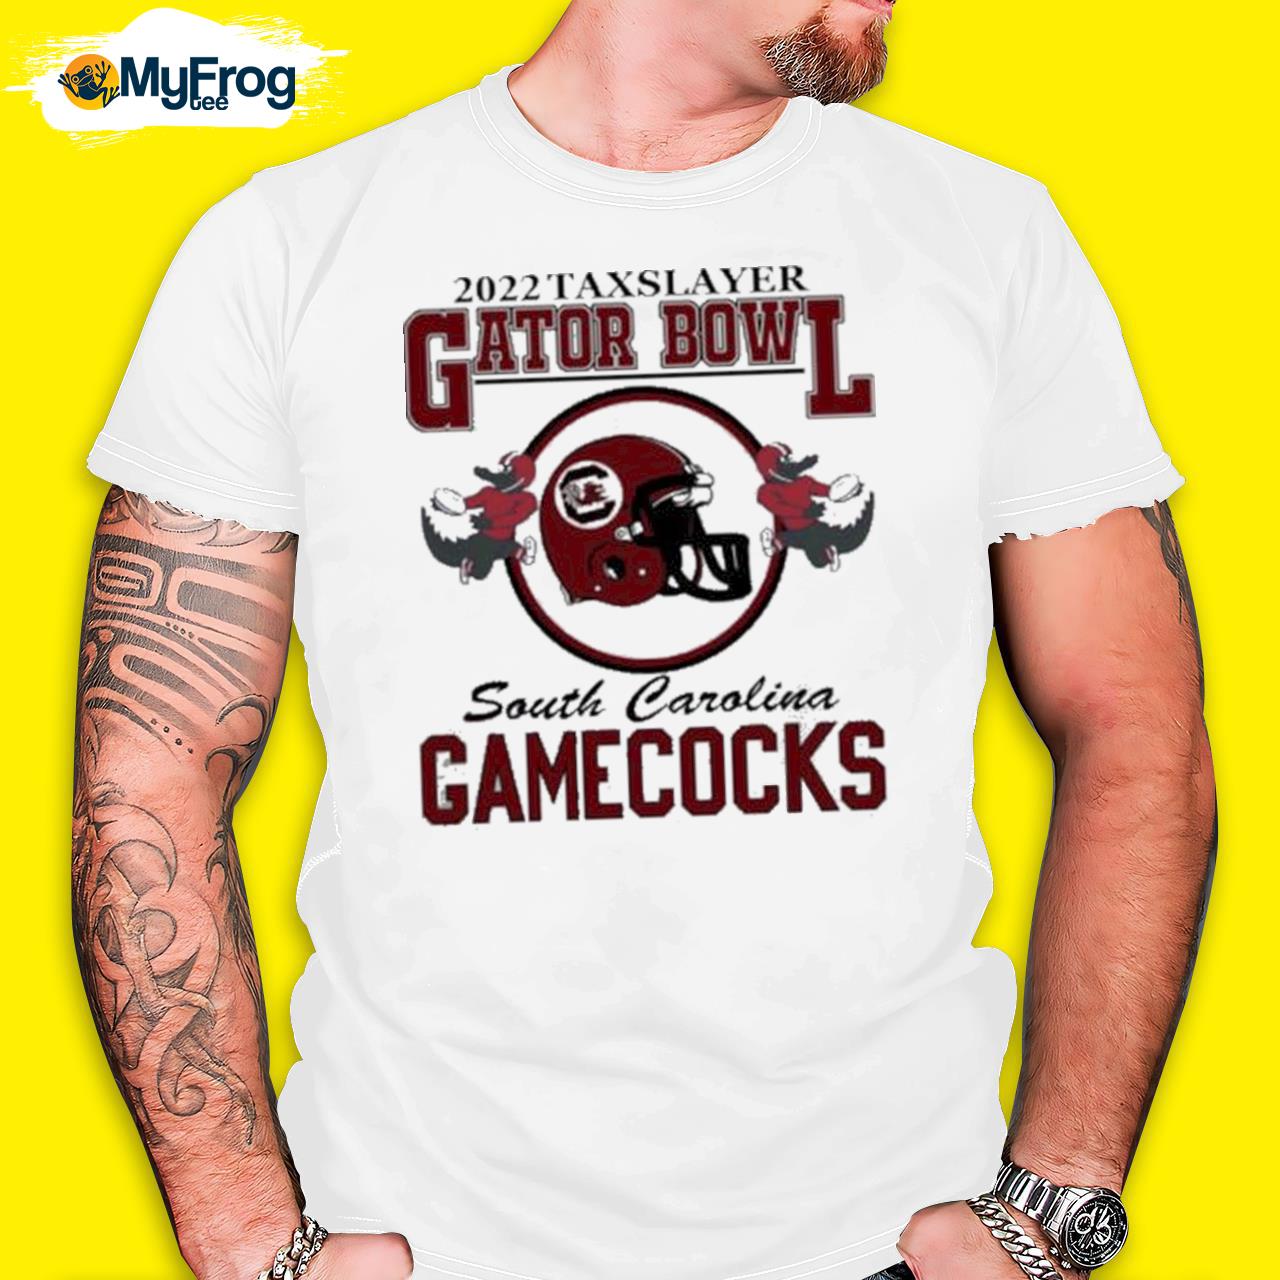 2022 Taxslayer Gator Bowl South Carolina Gamecocks Tee Shirt